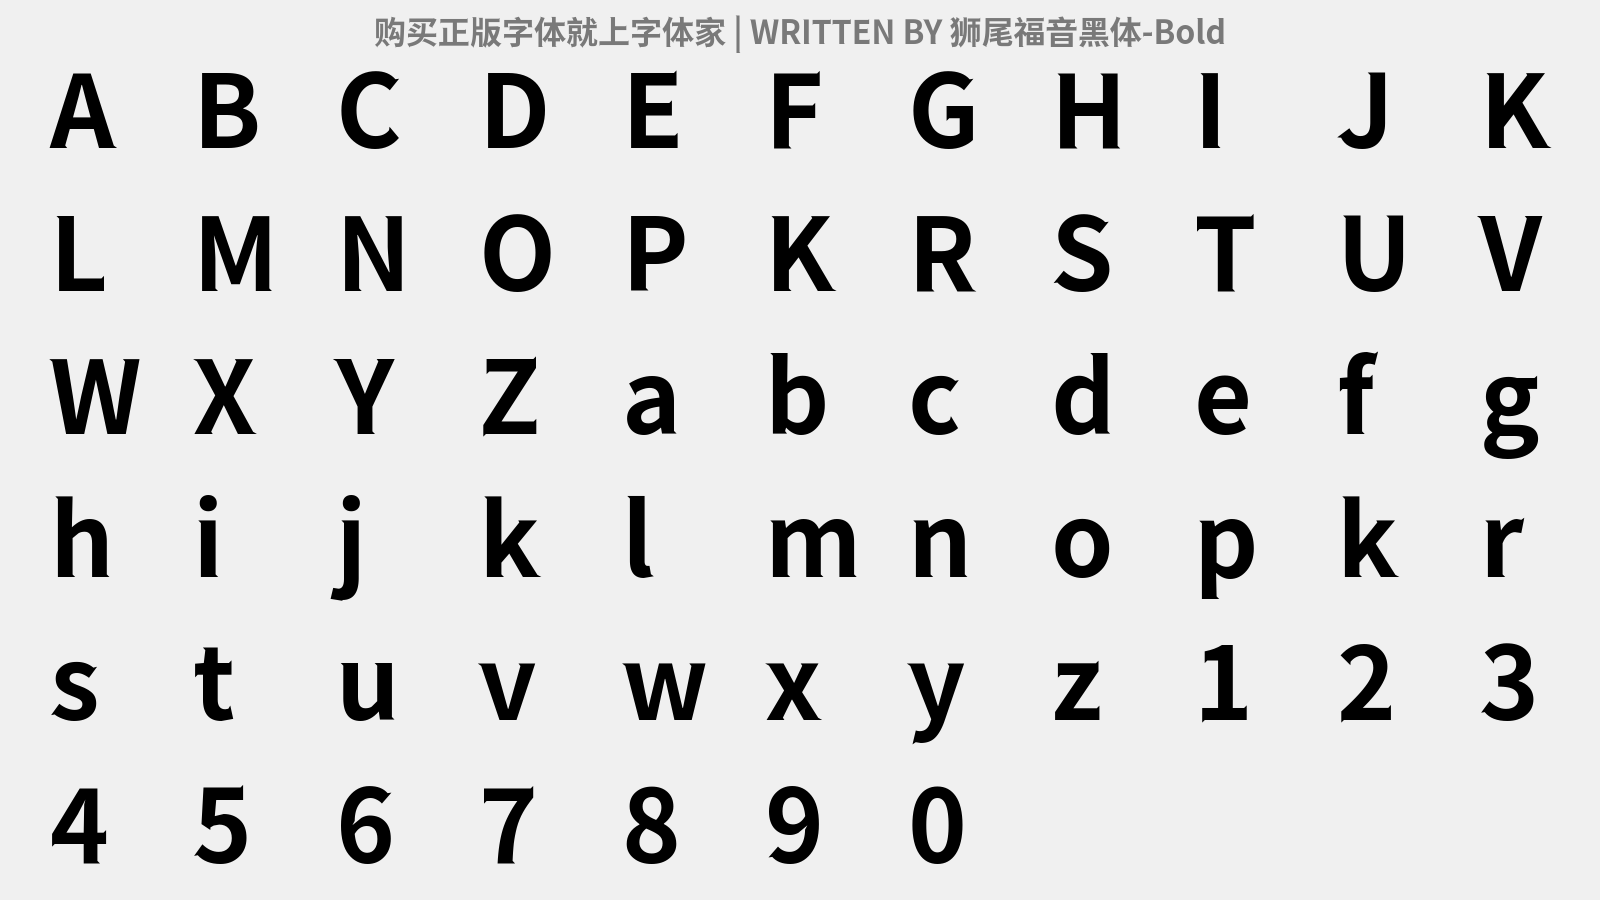 狮尾福音黑体-Bold - 大写字母/小写字母/数字